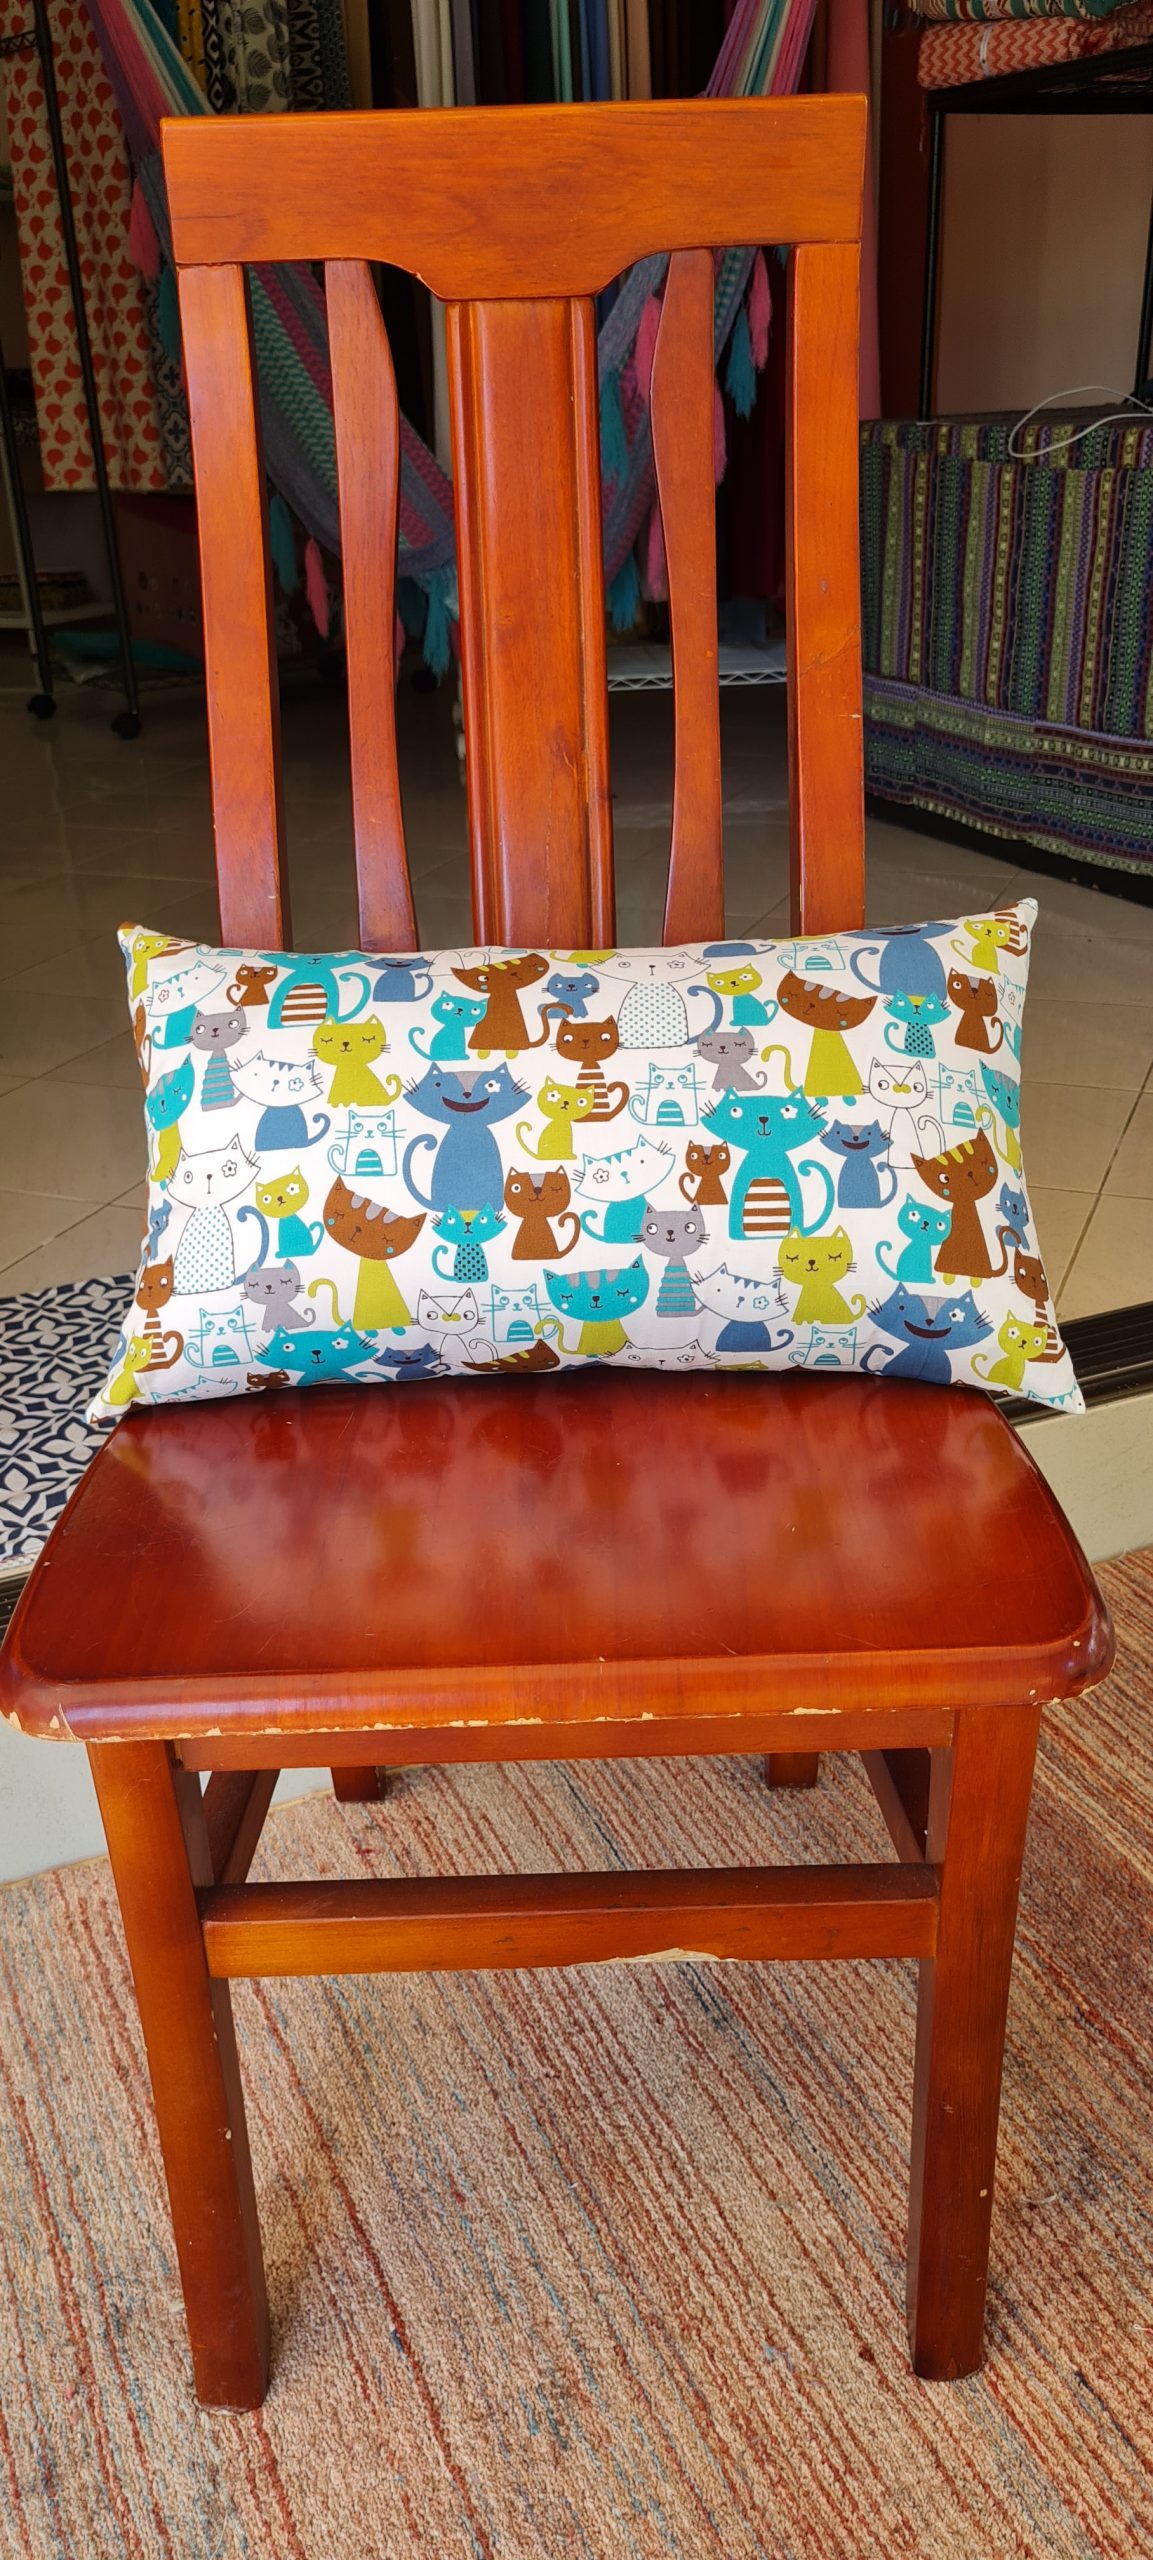 phuket cushions